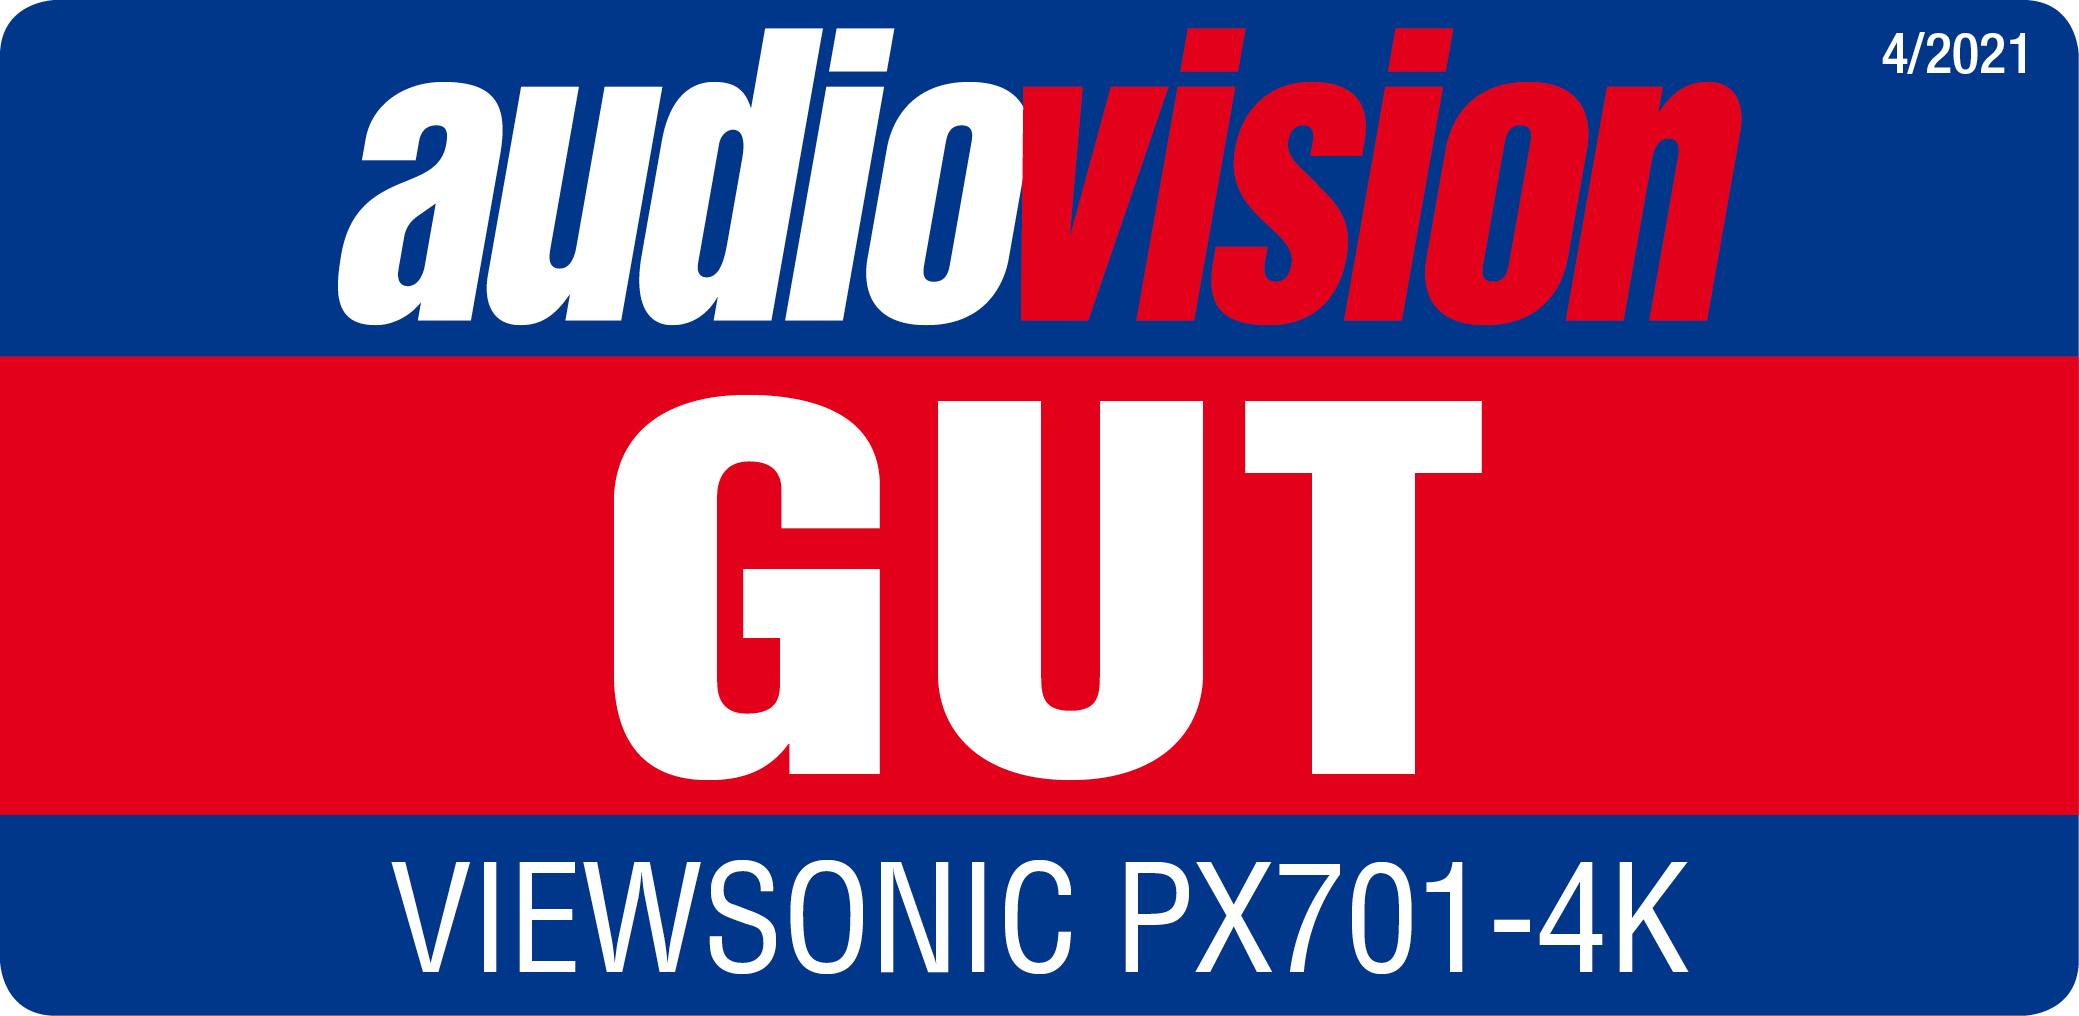 audiovision Gut